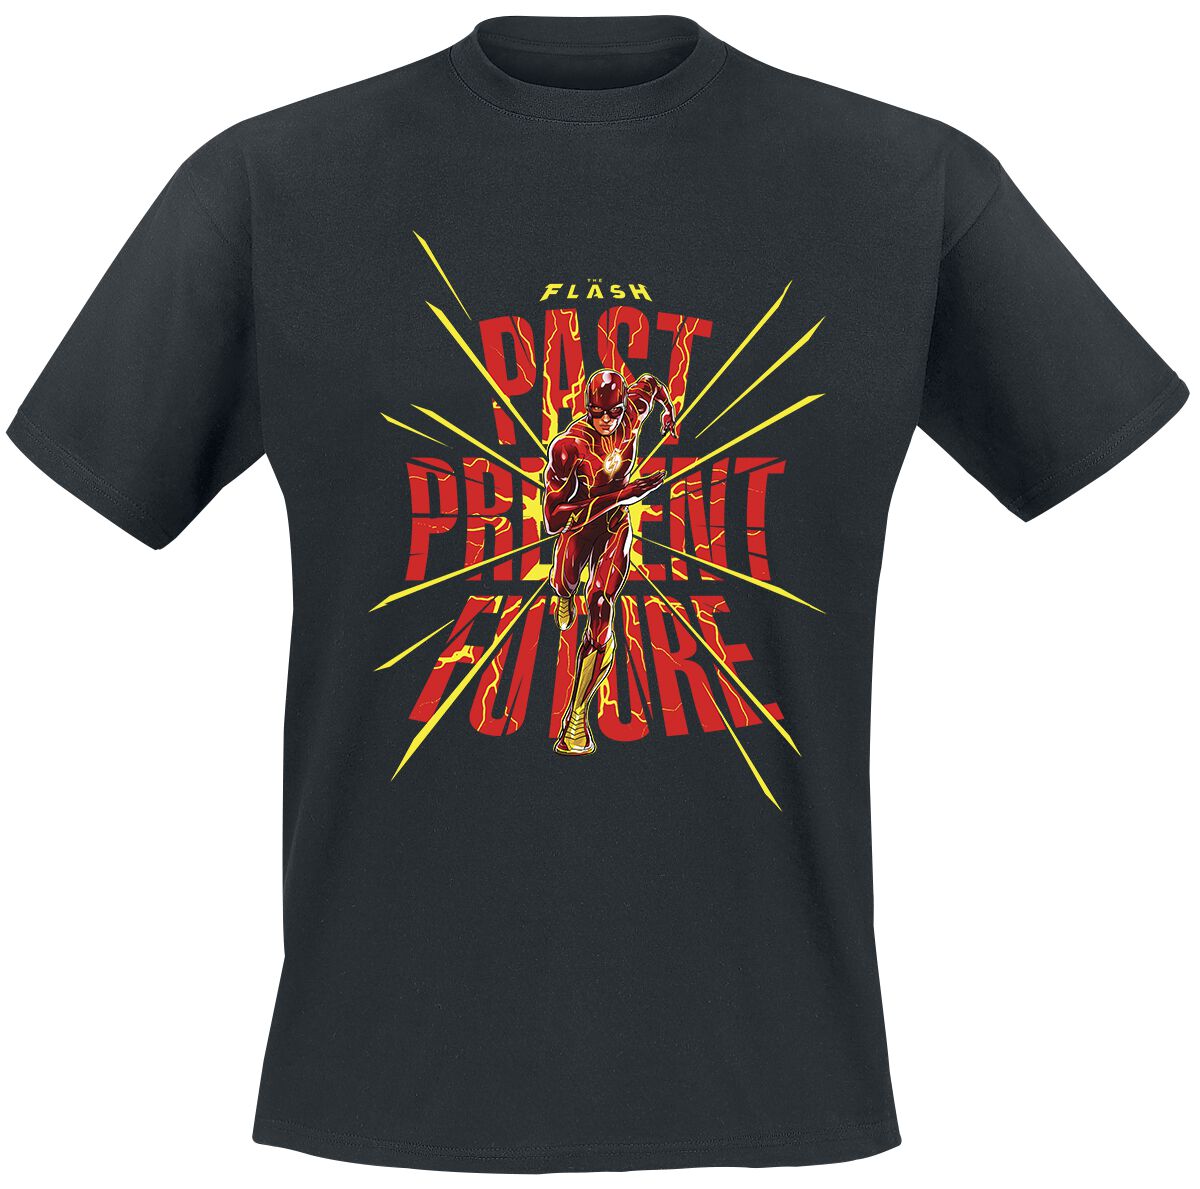 The Flash - DC Comics T-Shirt - Past Present Future - S bis XXL - für Männer - Größe XL - schwarz  - Lizenzierter Fanartikel